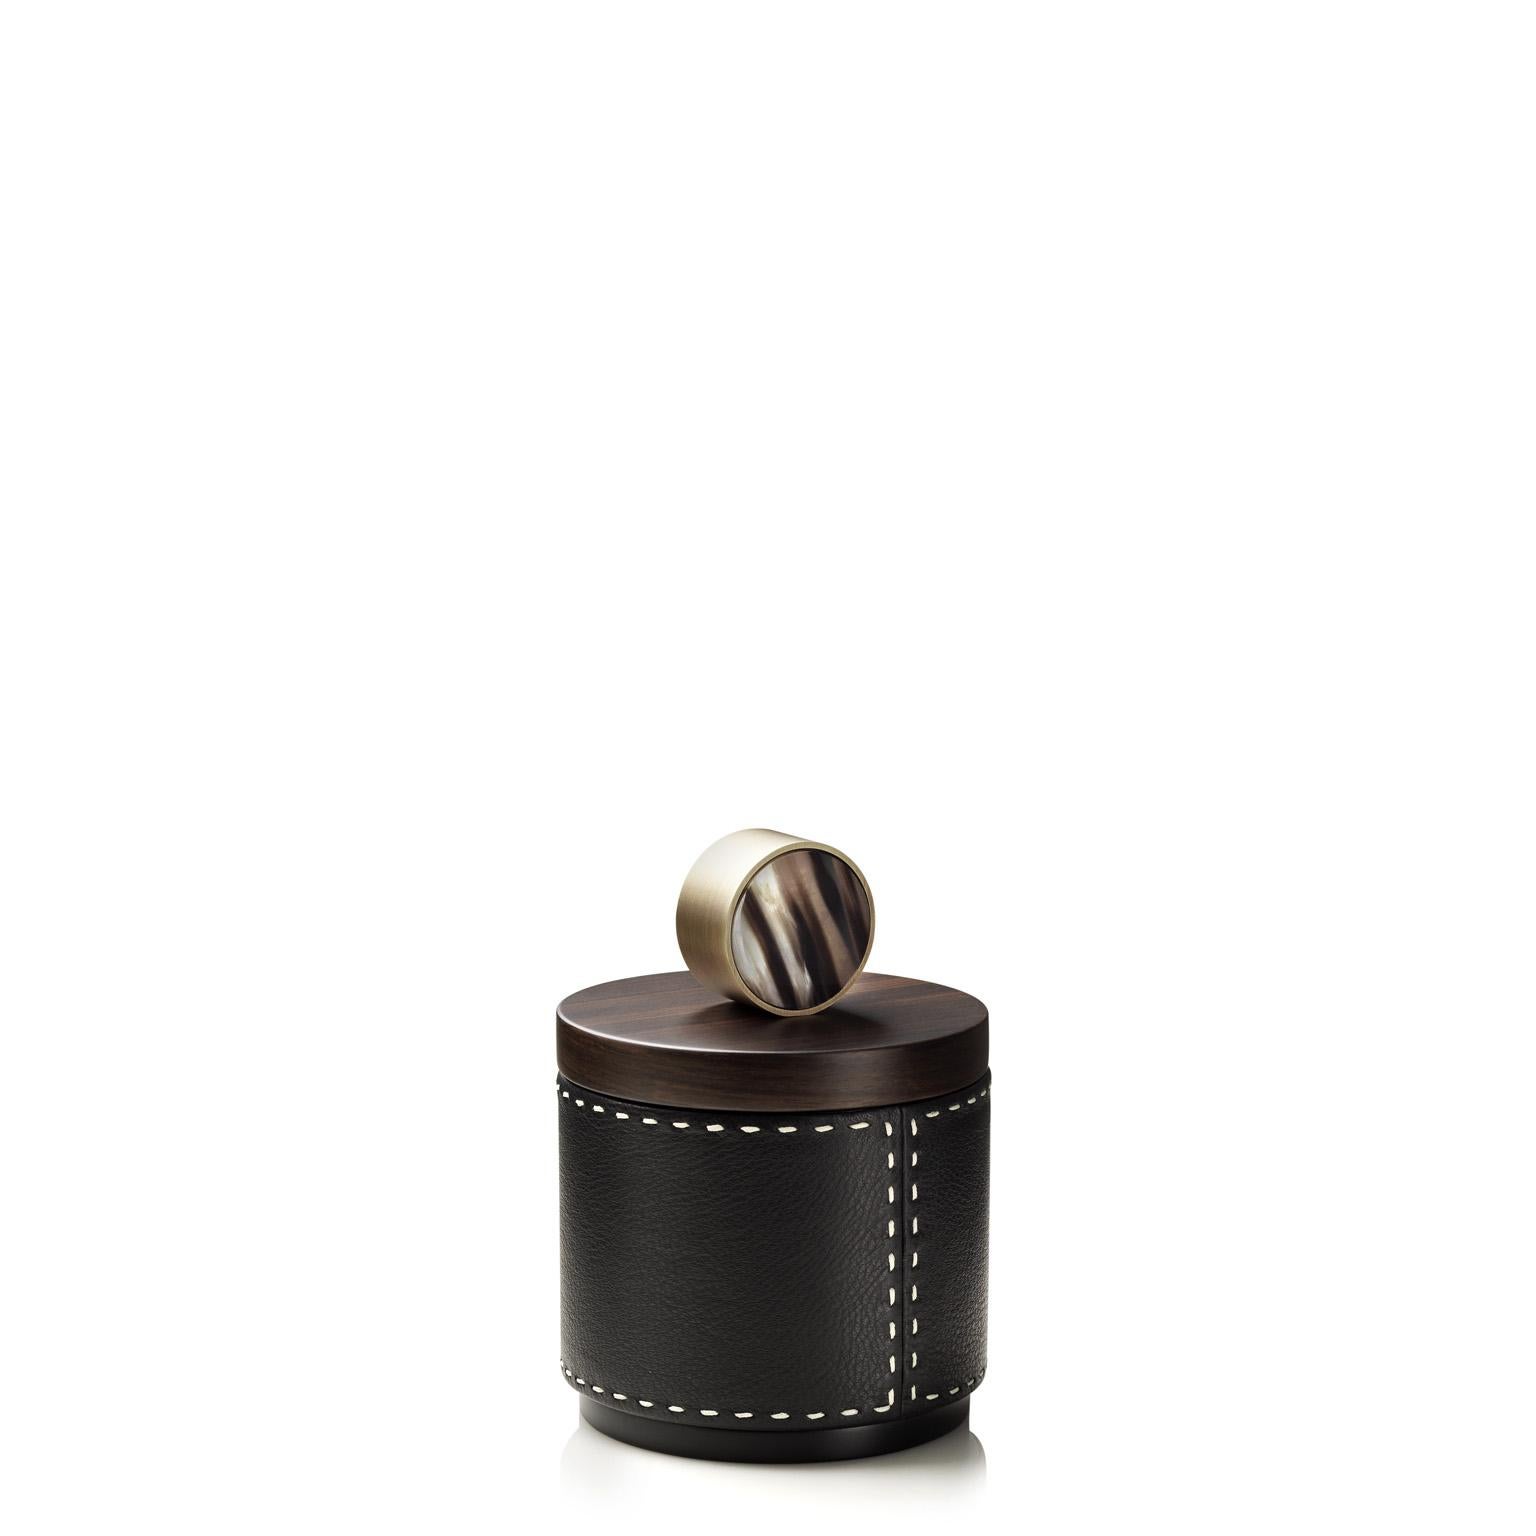 Agneta Round Box in Pebbled leather with Handle in Corno Italiano, Mod. 4480 In New Condition For Sale In Recanati, Macerata